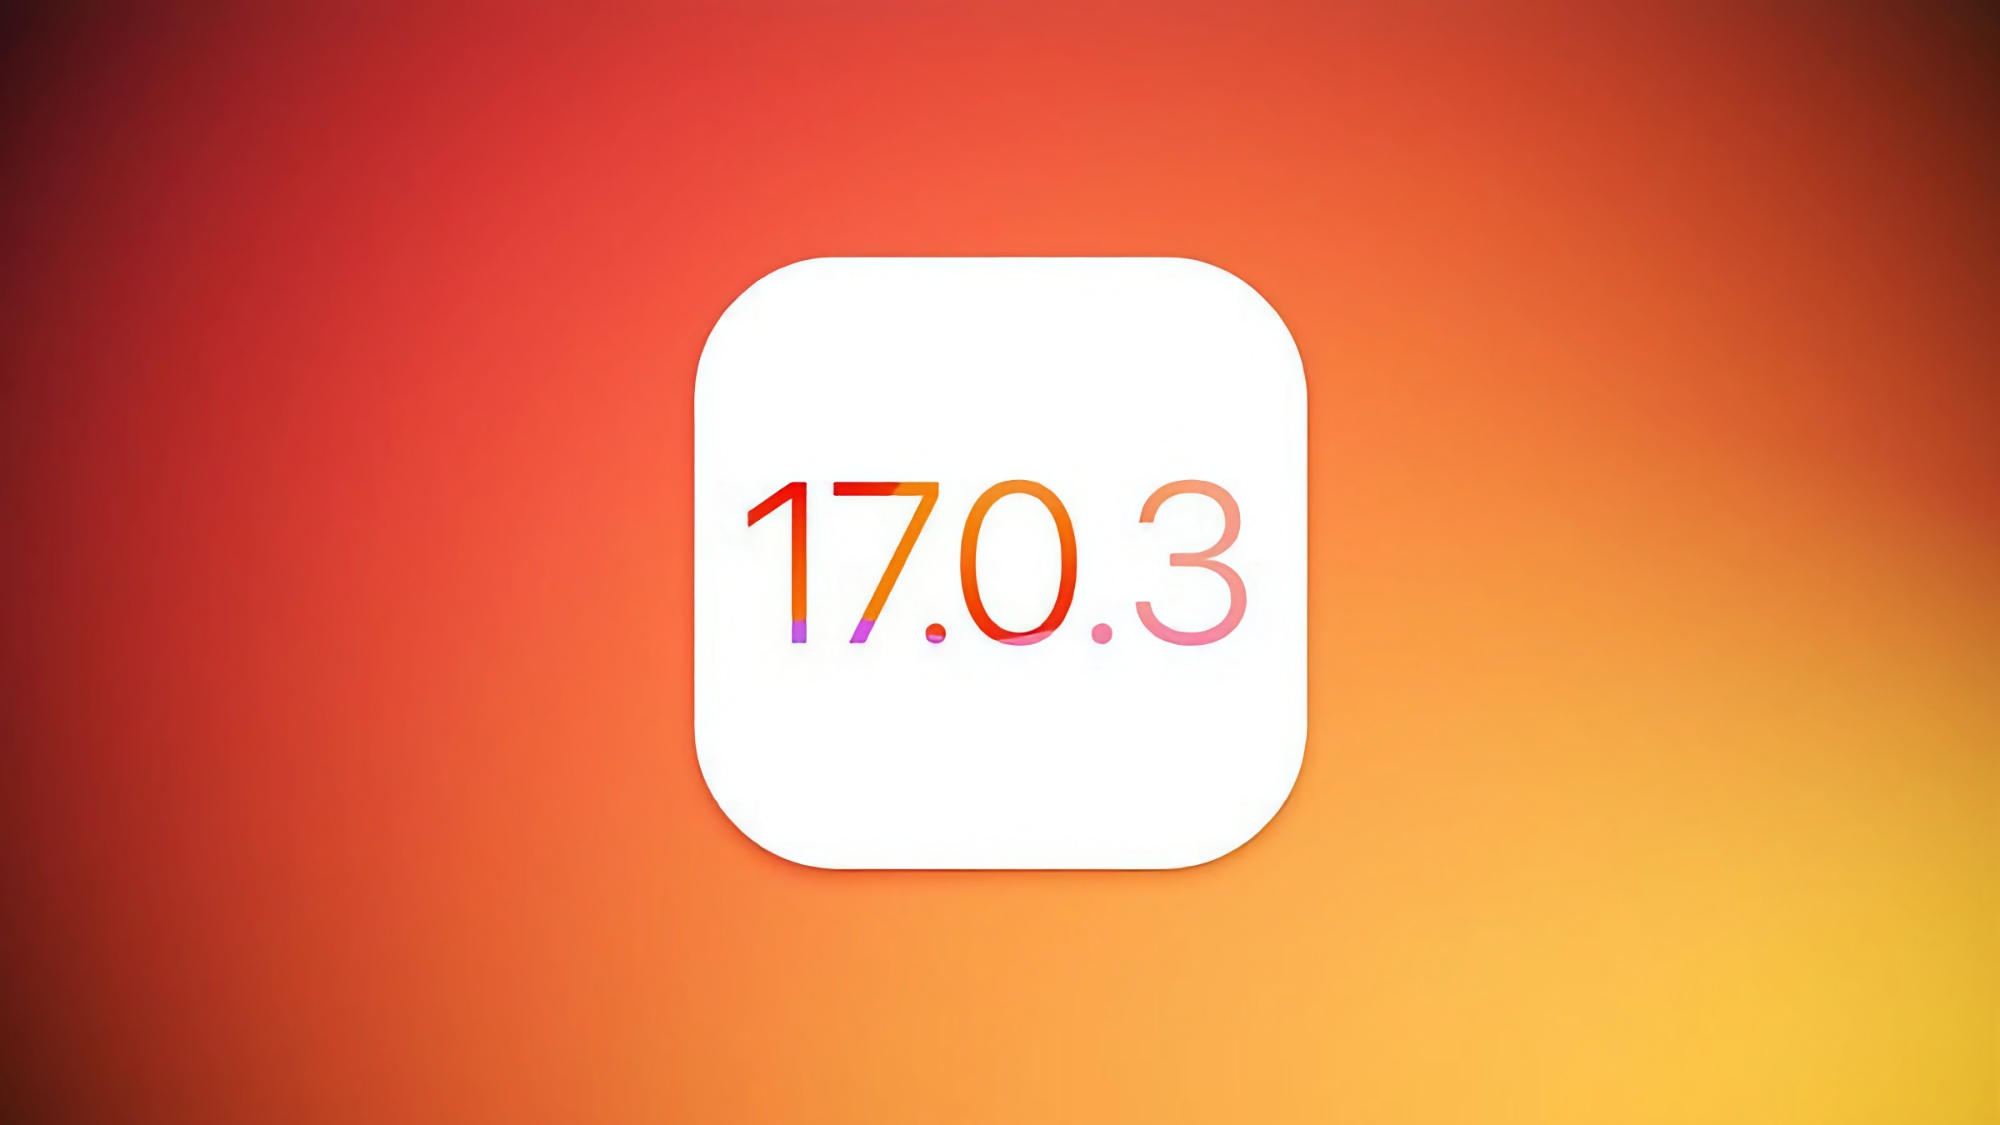 Apple bereitet die Veröffentlichung des iOS 17.0.3 Updates vor, das das Überhitzungsproblem des iPhone 15 Pro und iPhone 15 Pro Max beheben wird